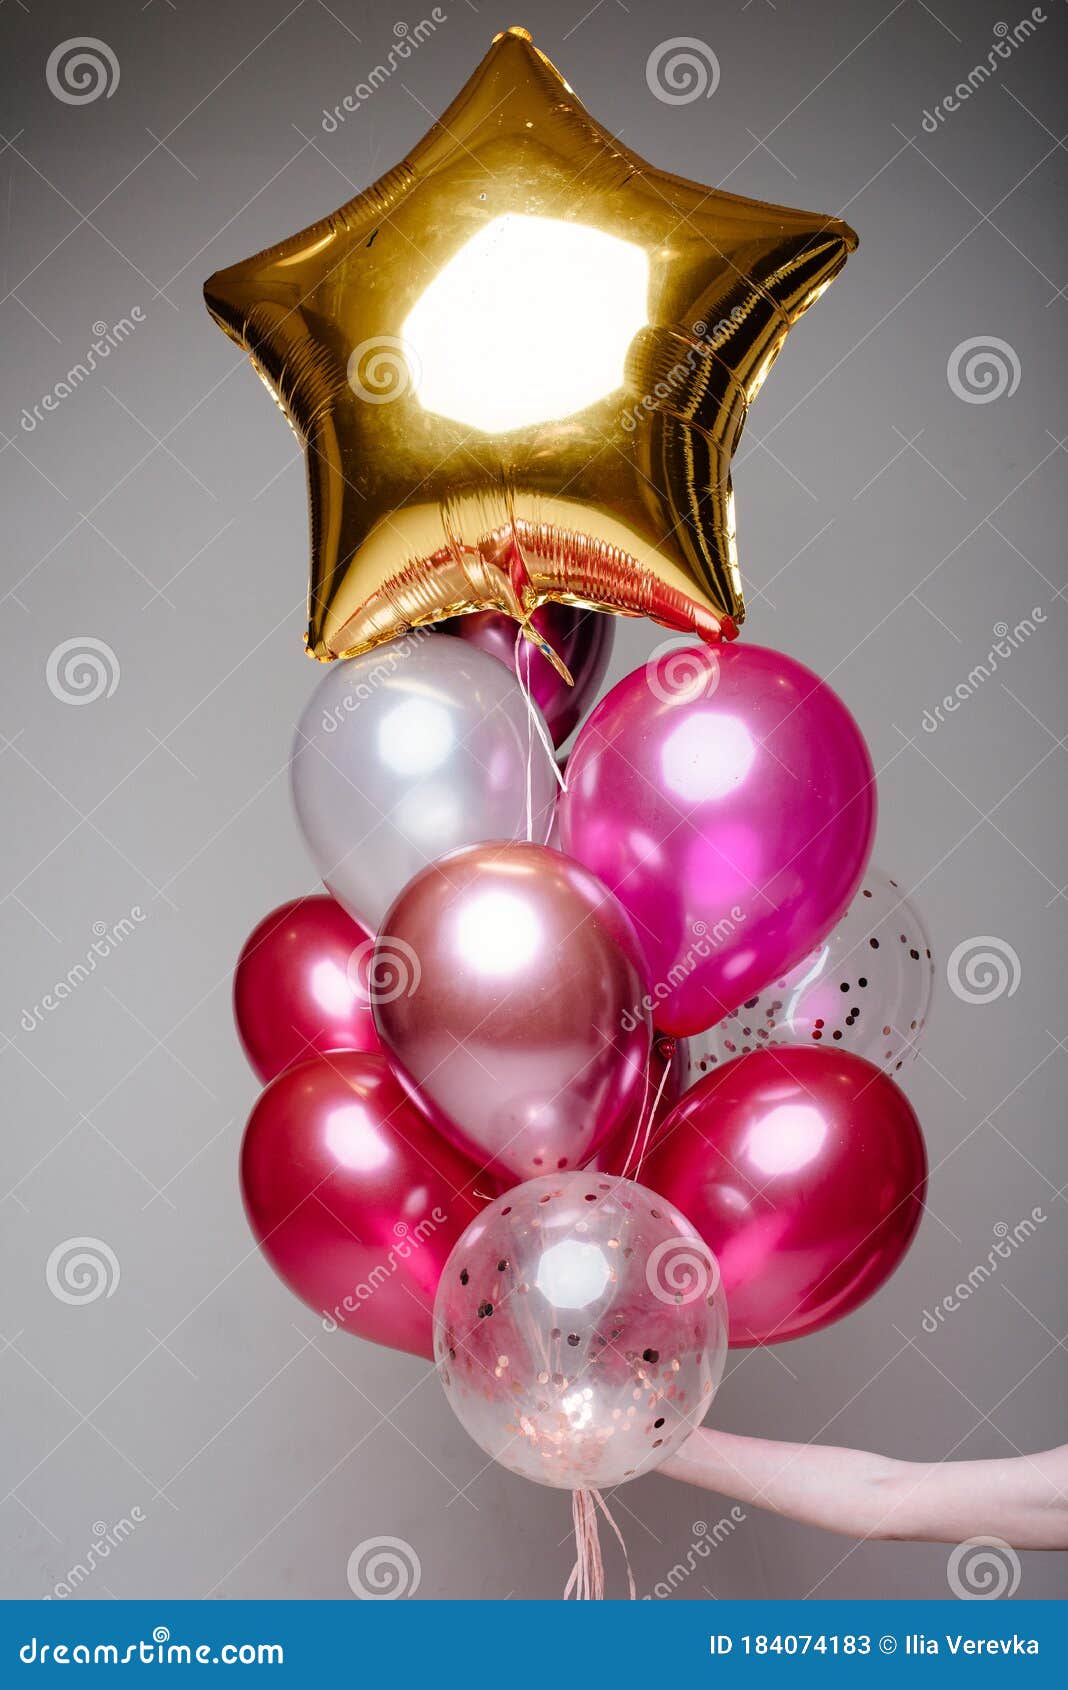 https://thumbs.dreamstime.com/z/composici%C3%B3n-de-globos-helio-en-mano-transparentes-color-rosa-blanco-y-estrella-dorada-la-una-mujer-sobre-un-fondo-claro-184074183.jpg